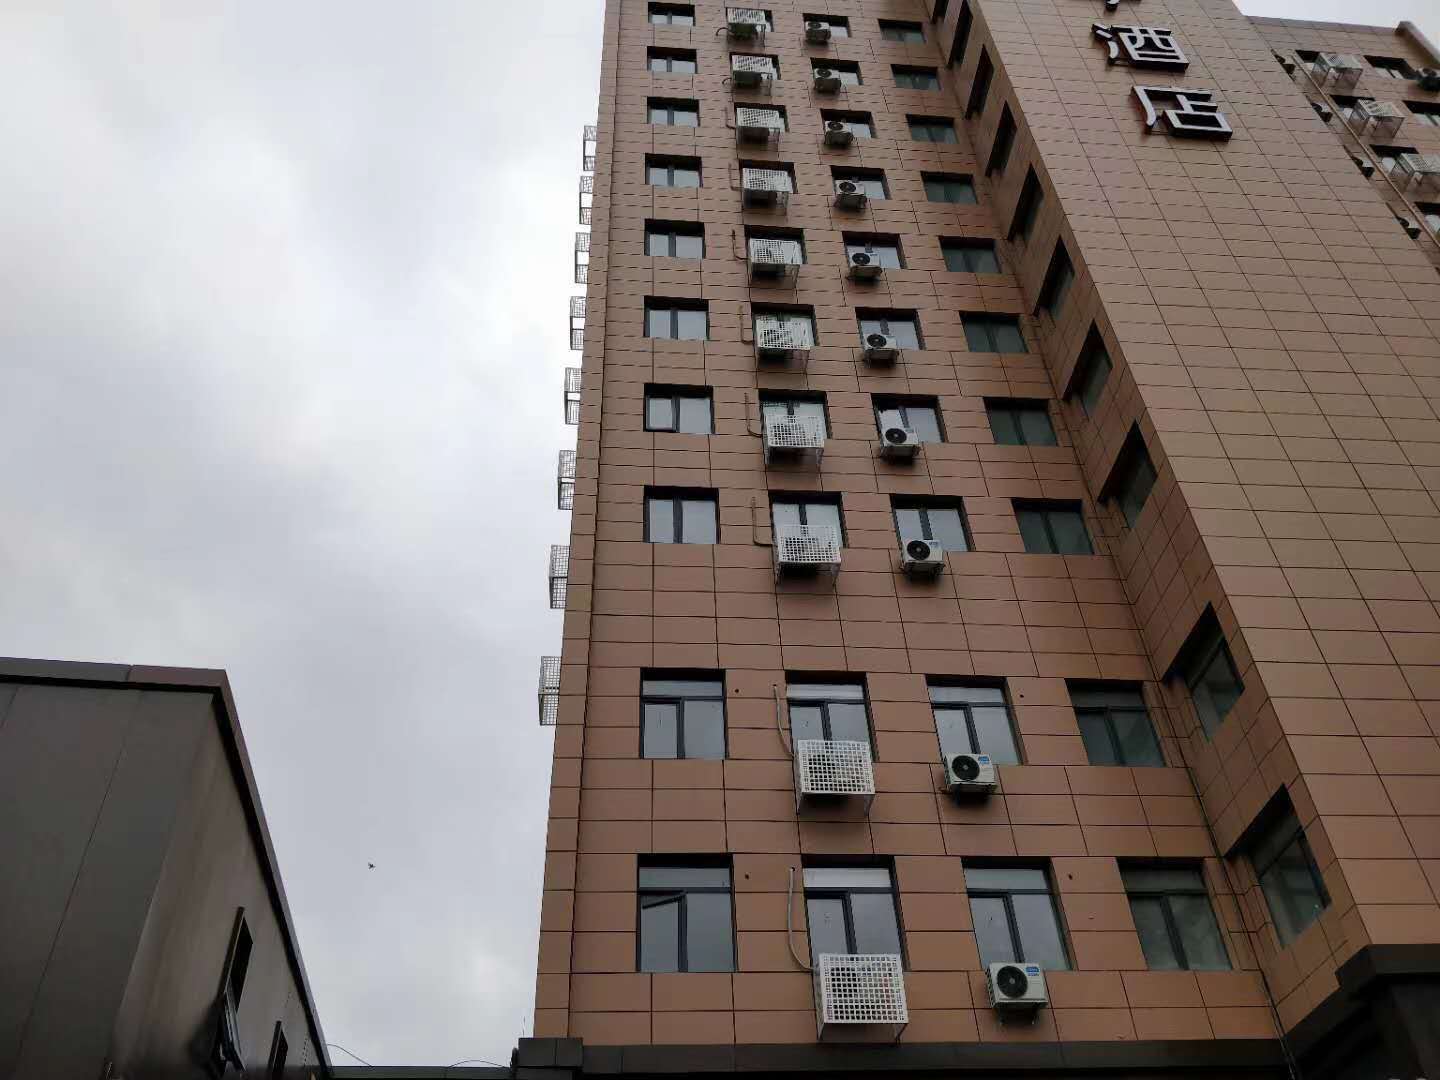 乐东一酒店整体加固改造工程